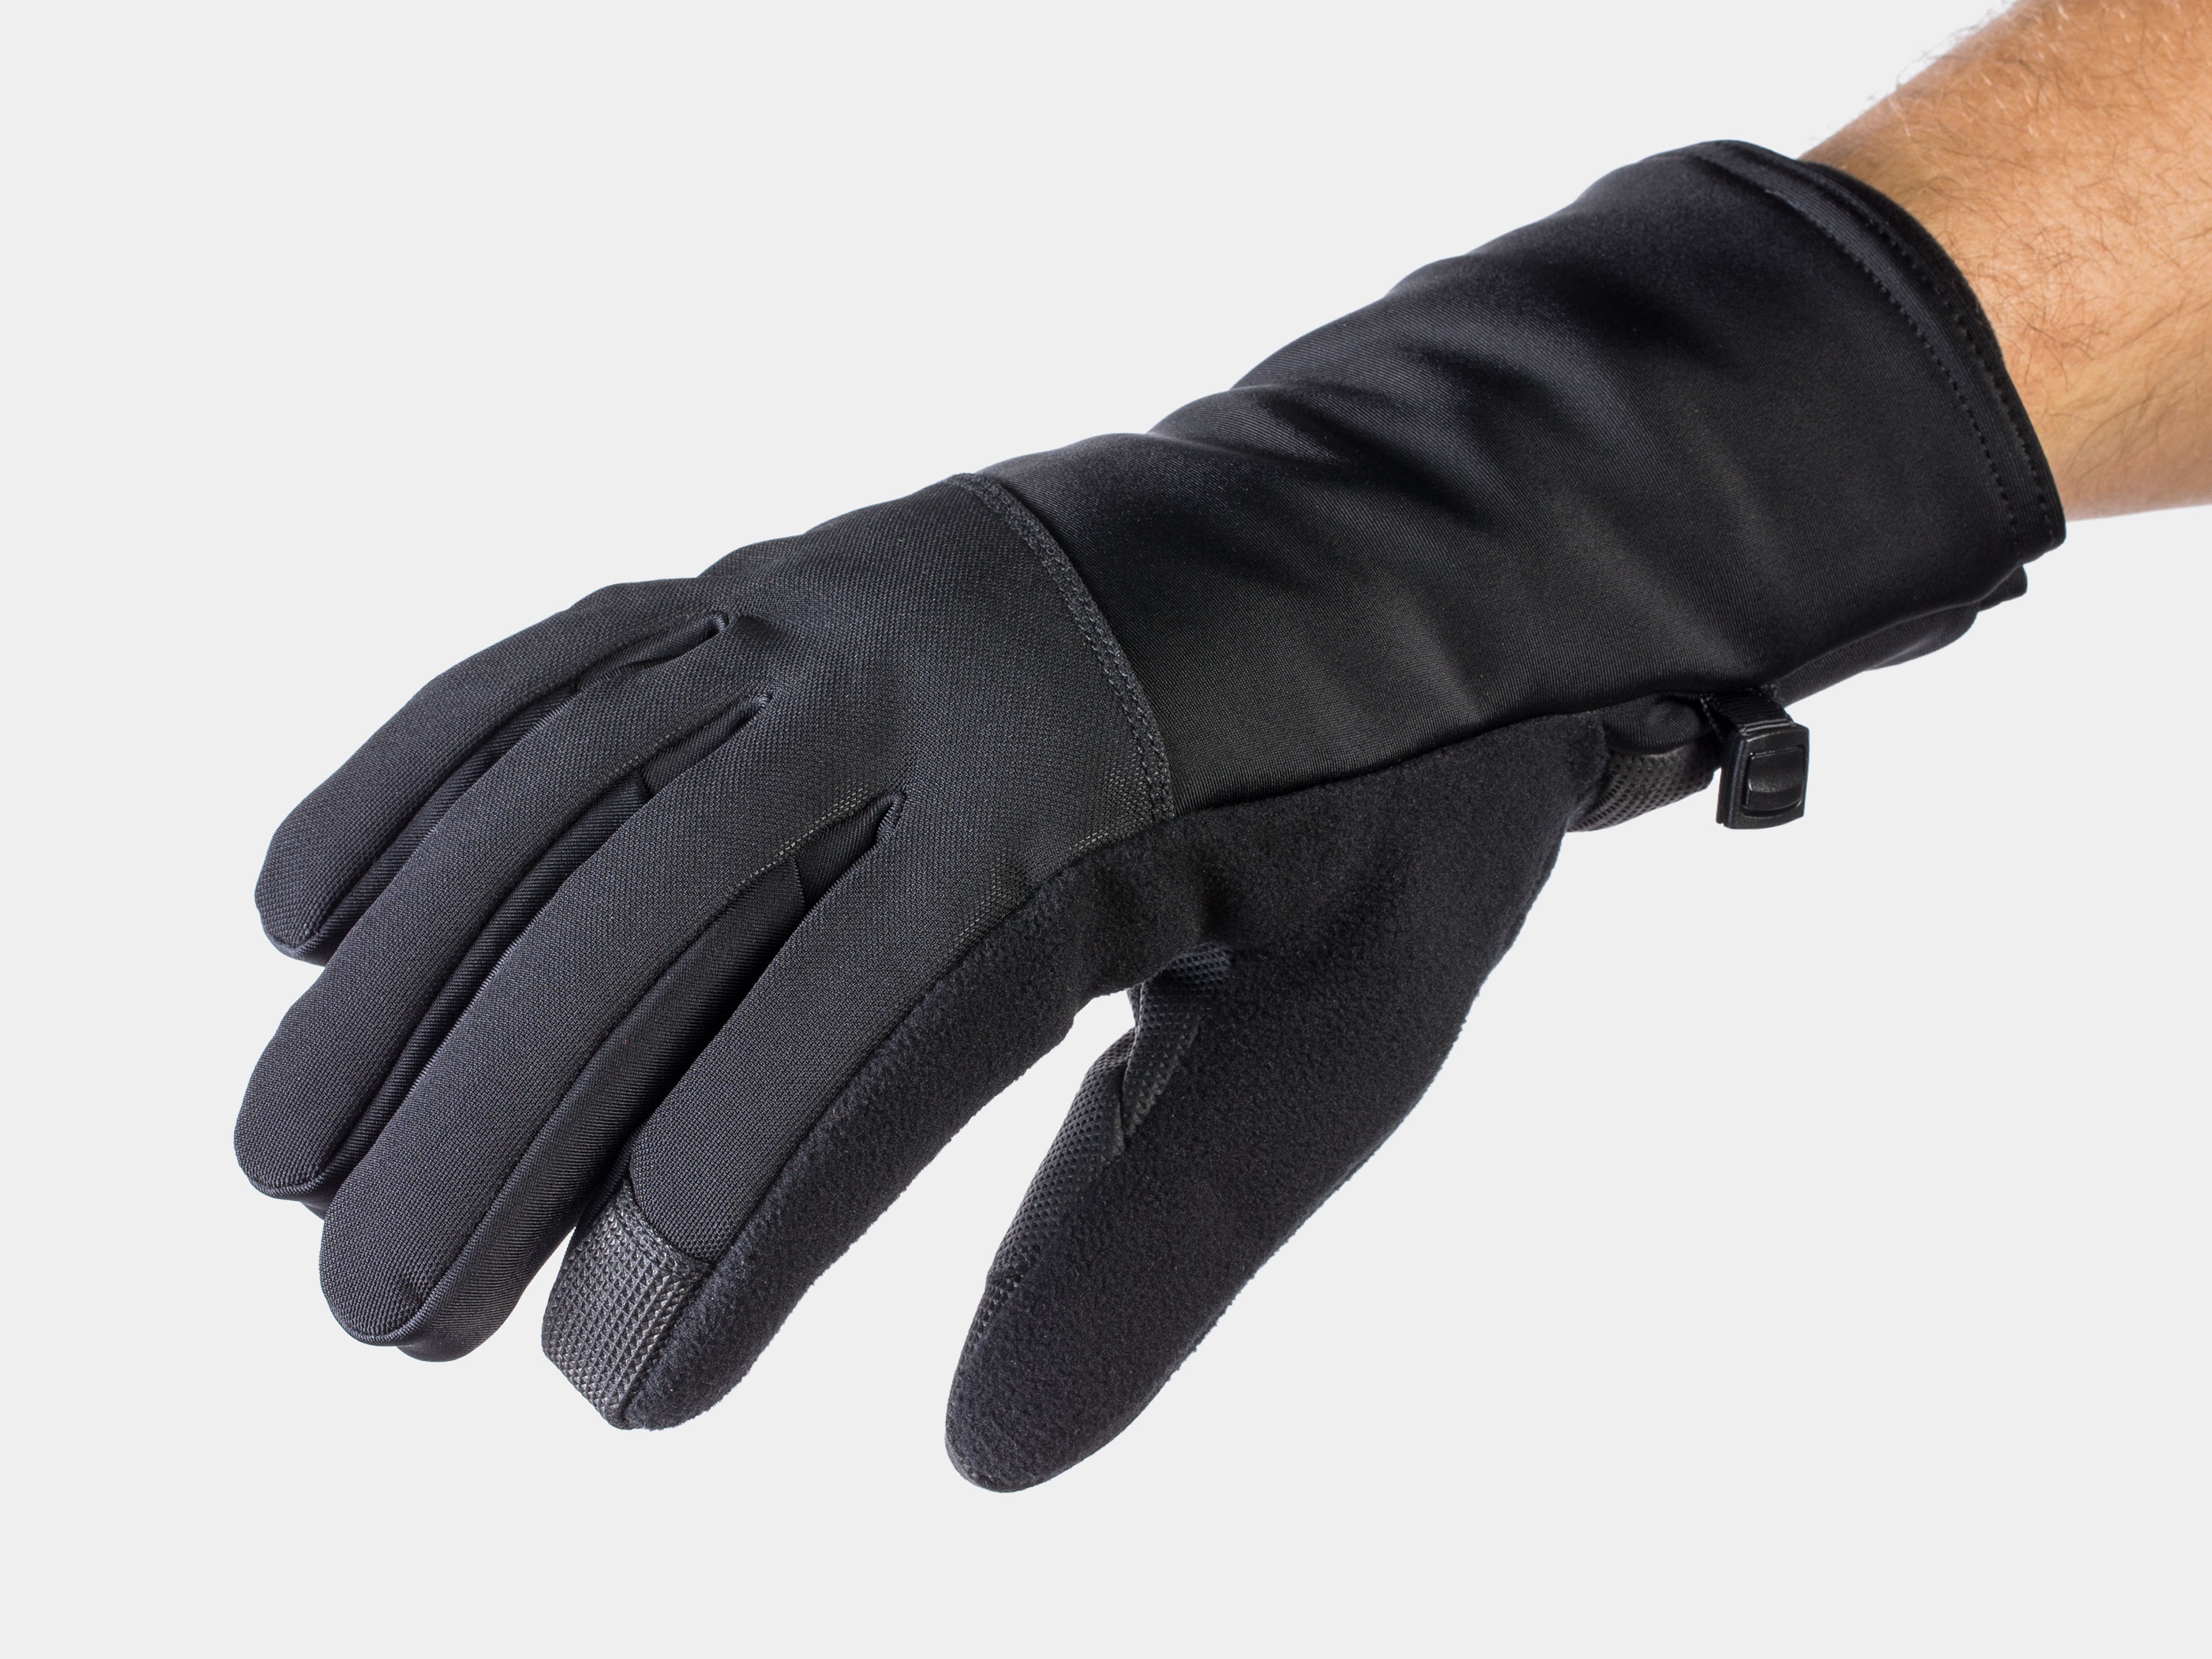 bontrager gloves amazon